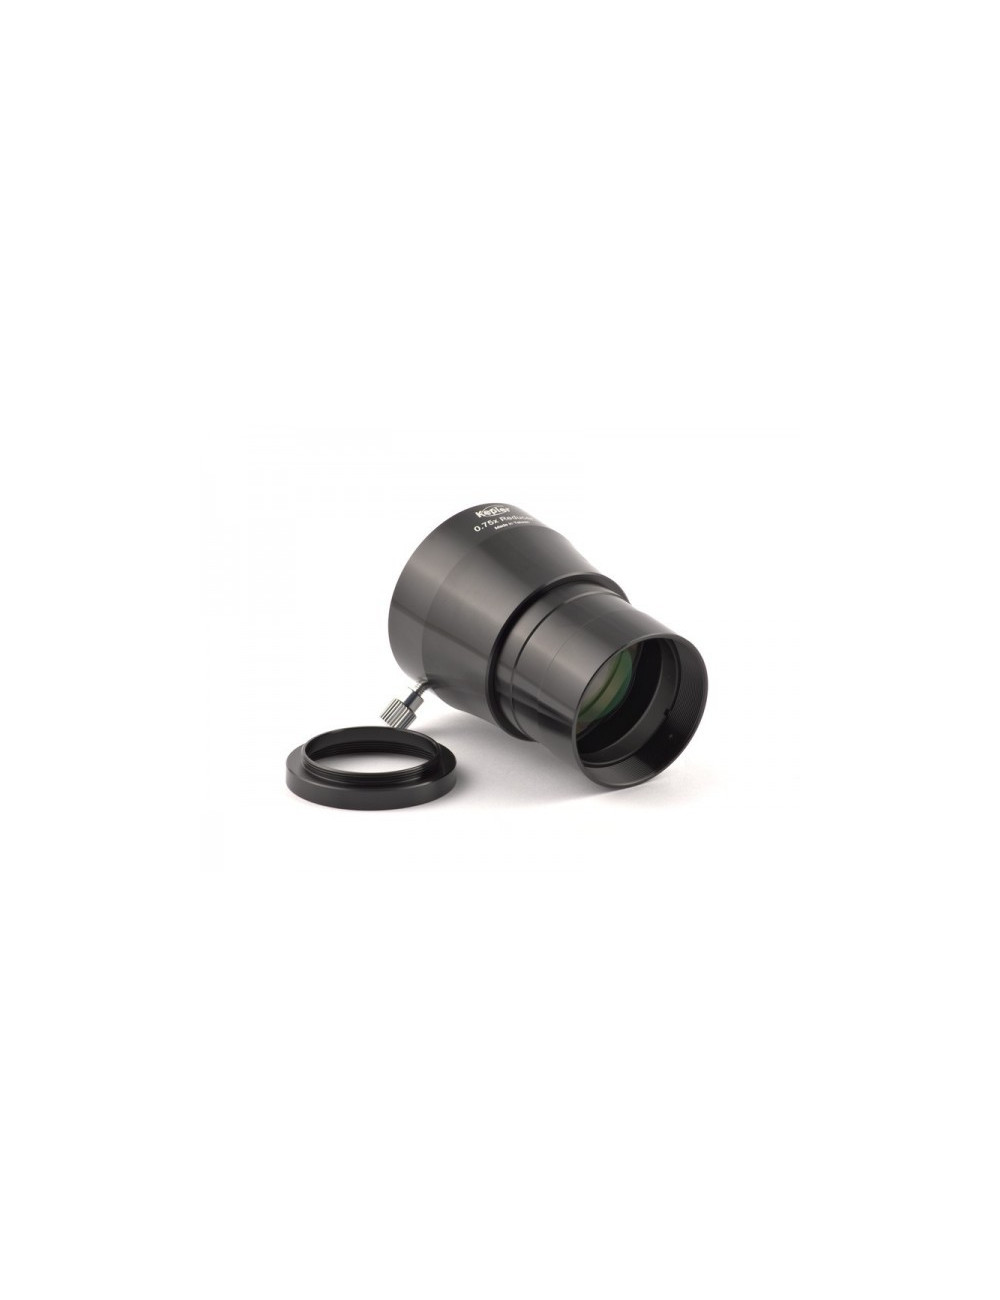 Réducteur de focale 0,75 x Kepler 50,8mm pour Ritchey-Chrétien